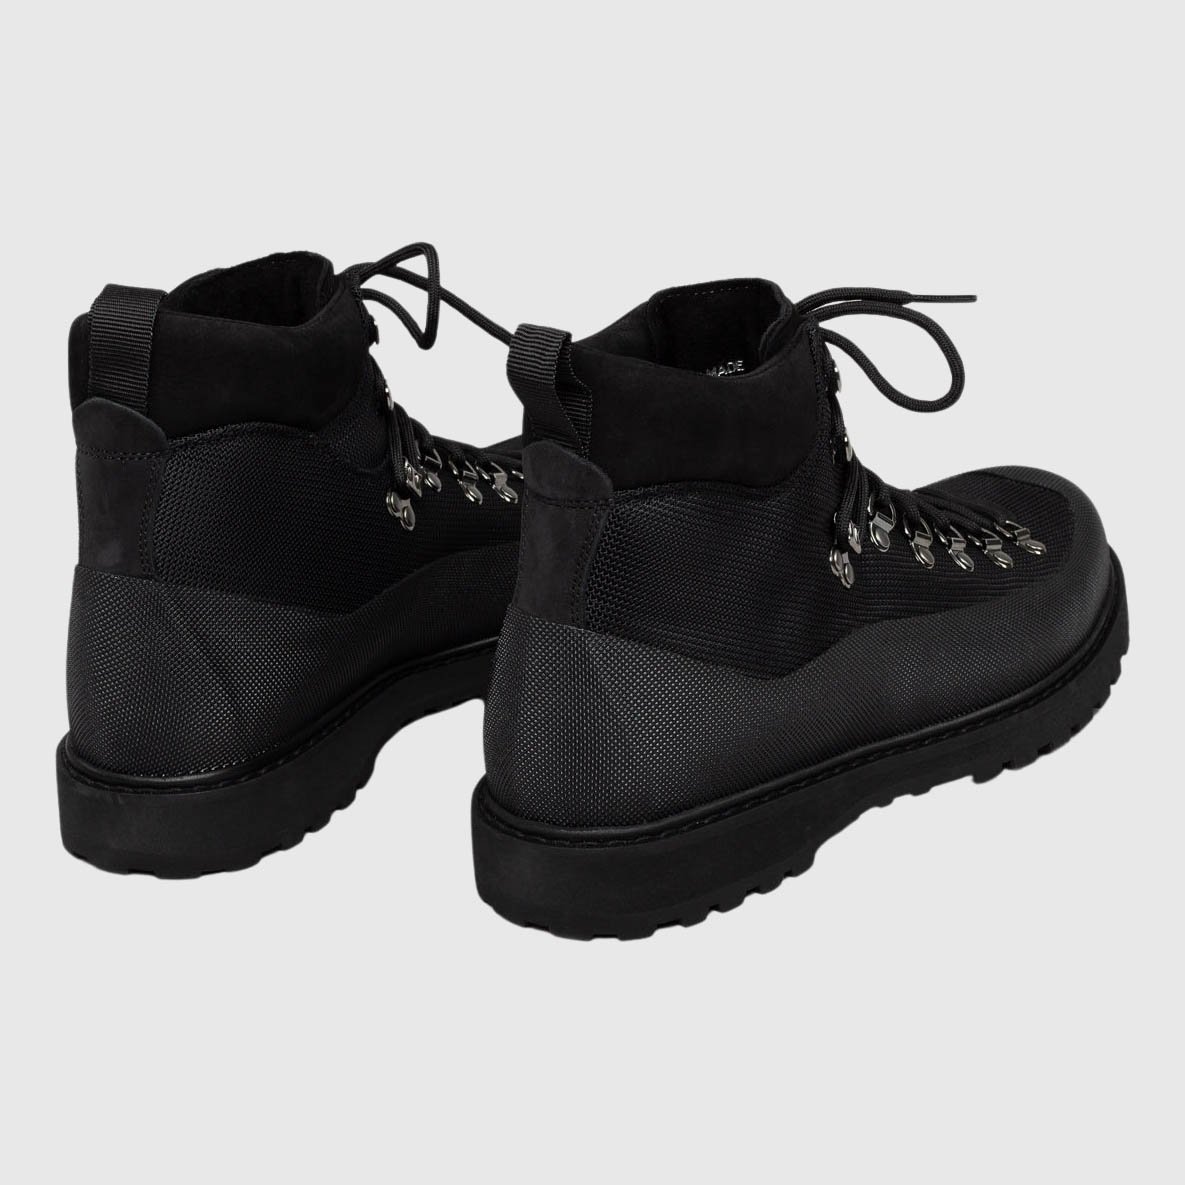 Diemme Roccia Vet Boots - Black Fabric Boots Diemme 